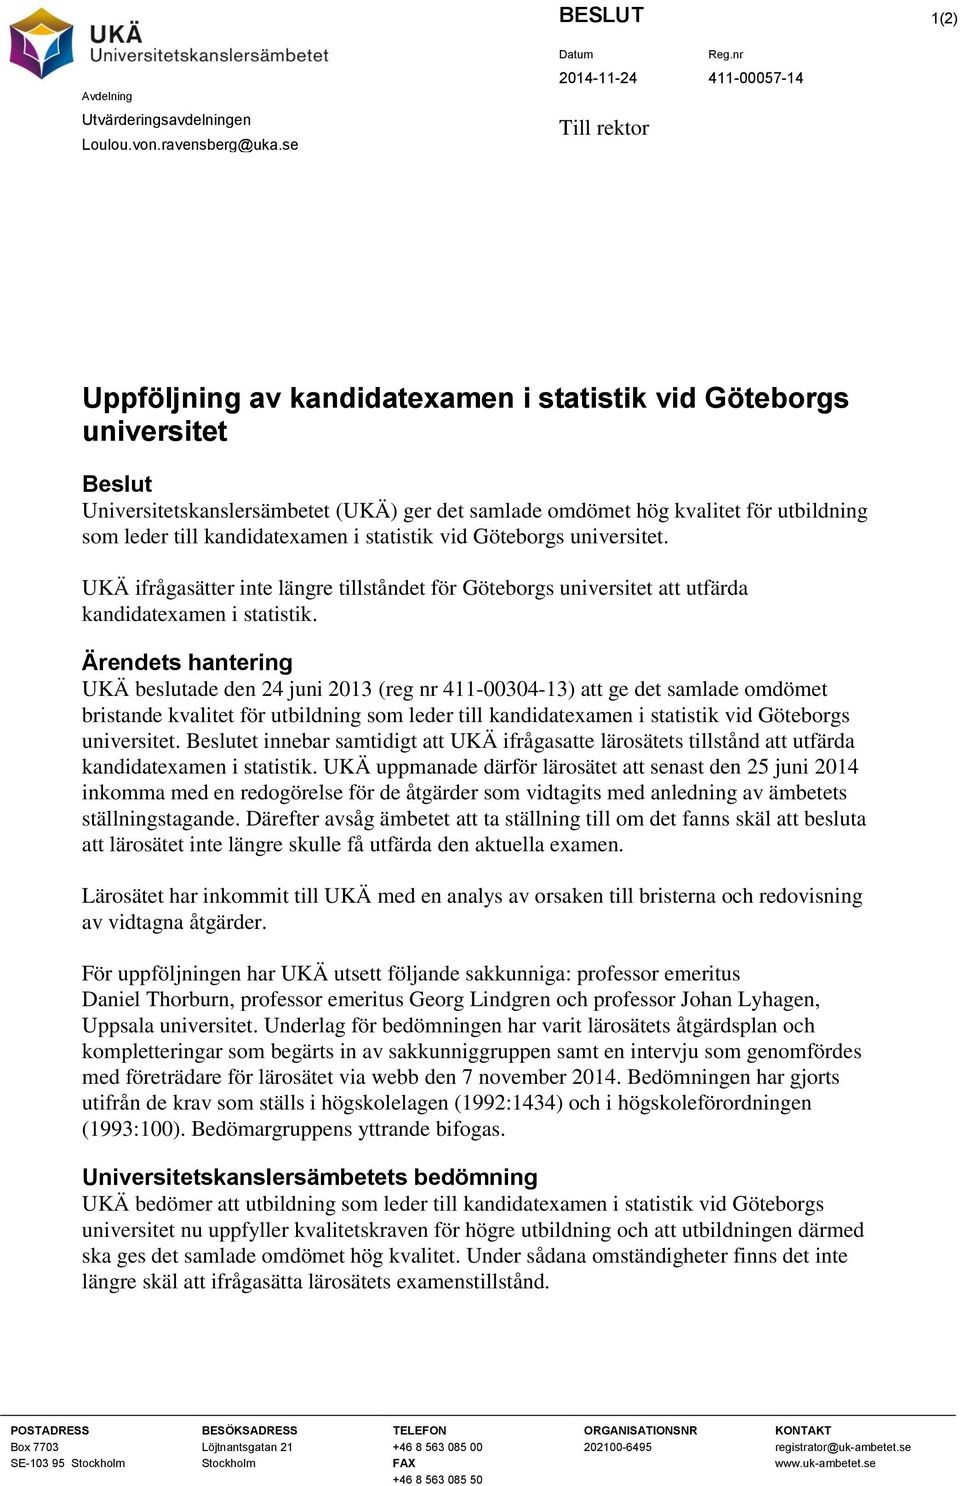 kandidatexamen i statistik vid Göteborgs universitet. UKÄ ifrågasätter inte längre tillståndet för Göteborgs universitet att utfärda kandidatexamen i statistik.